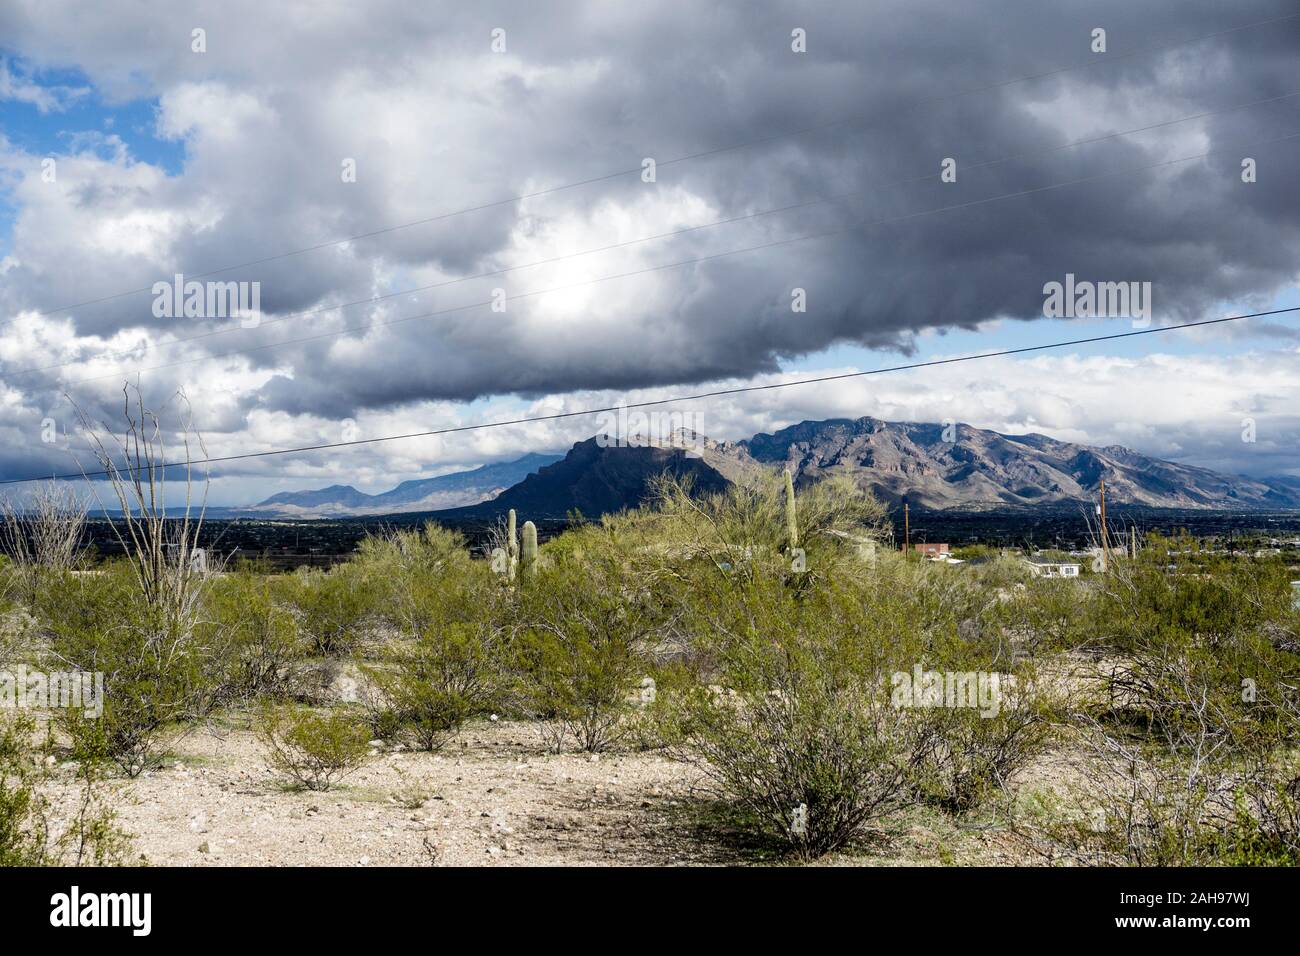 La tormenta de magníficas vistas sombreó las lejanas montañas de Santa Catalina mientras las nubes pasan rápidamente en el cielo visto desde el soleado desierto alto en las afueras occidentales de Tucson Foto de stock